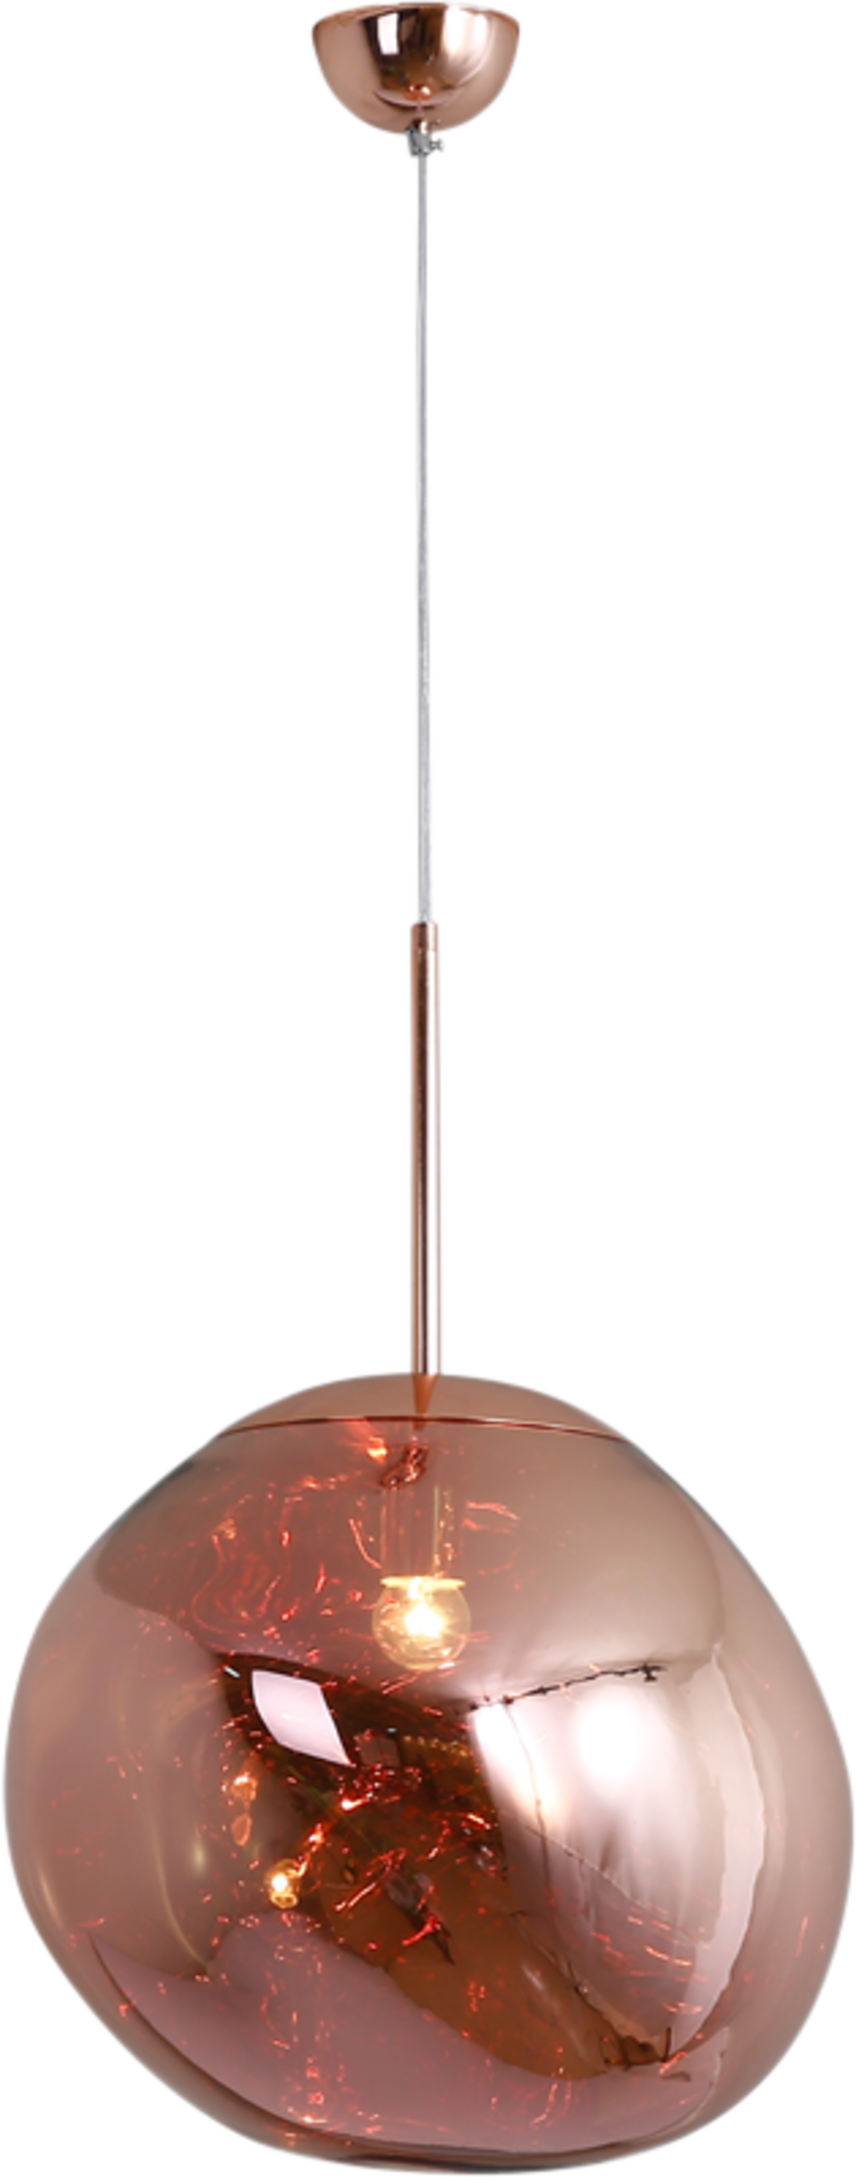 Melt Hanglamp Melt Red Copper/Large image.